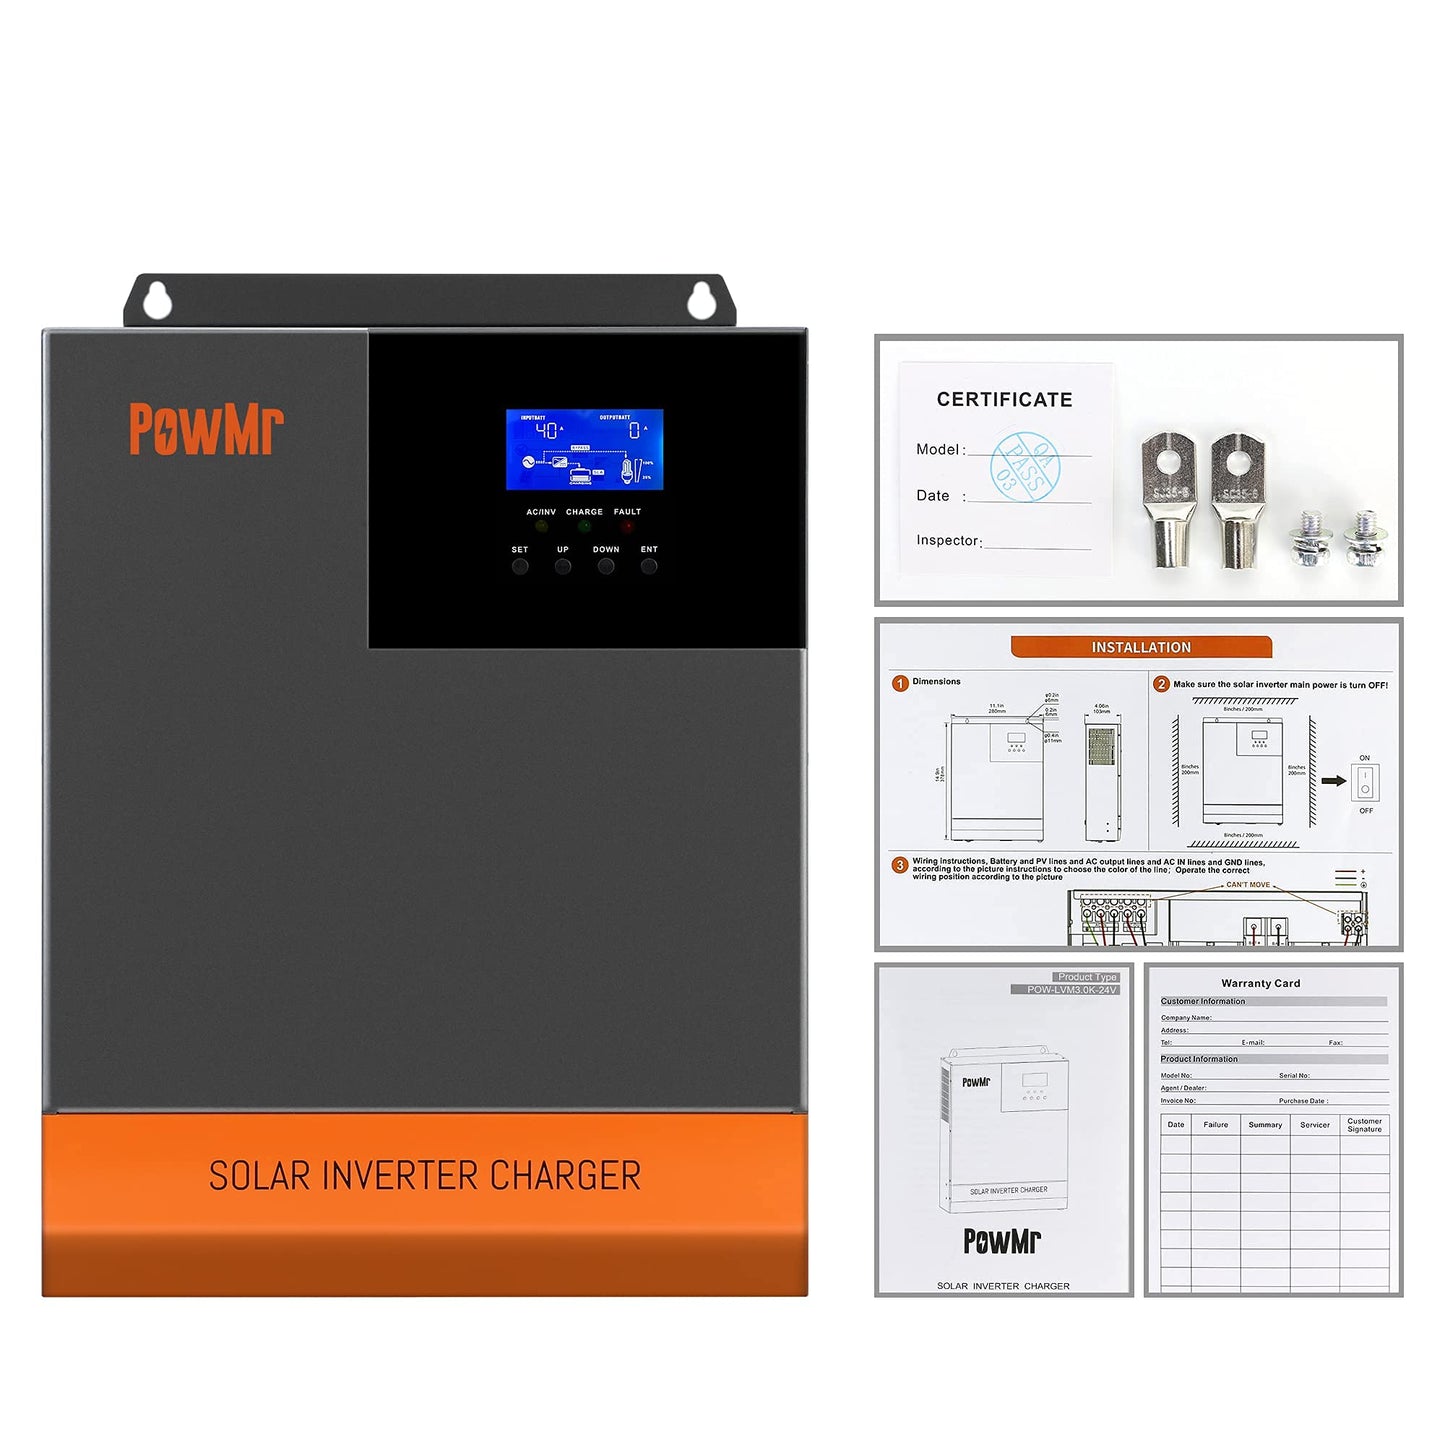 PowMr 110V inversor solar híbrido 48V 24V 5KW 3KW MPPT incorporado 80A 60A cargador inversor híbrido de onda sinusoidal pura 100V a 120V